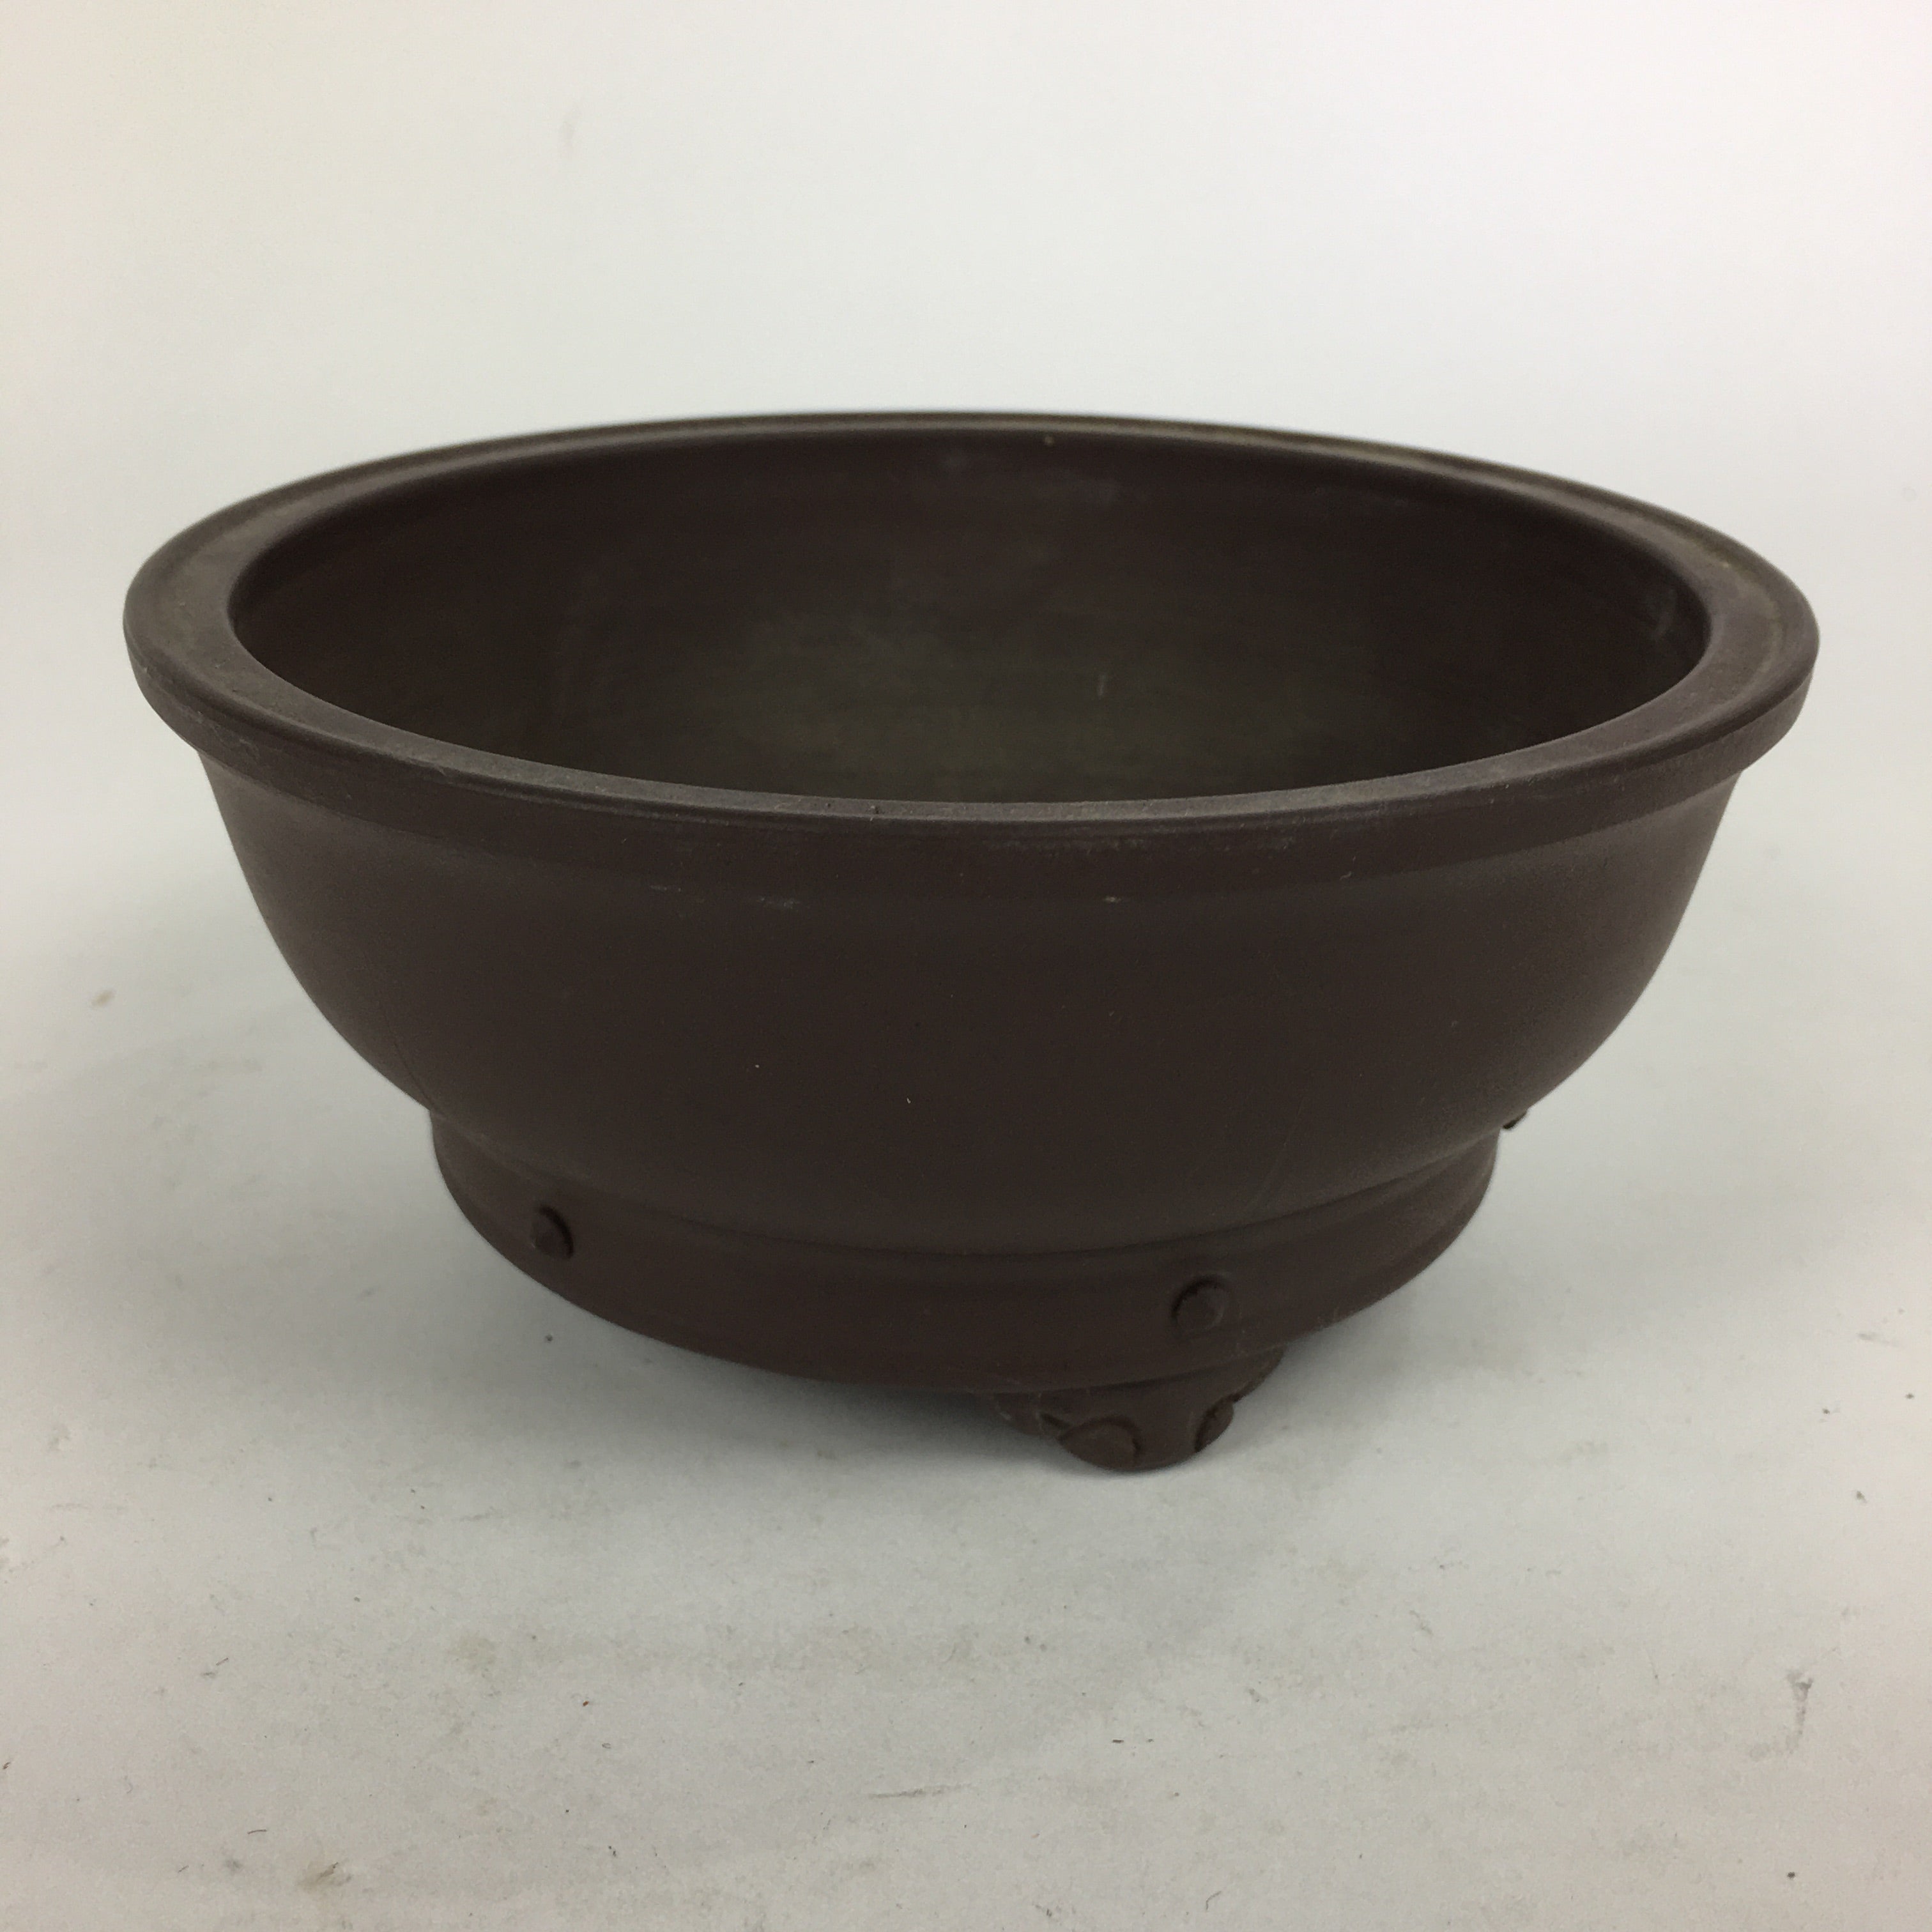 Japanese Ceramic Bonsai Pot Vtg Pottery House Plant Flower Pot Brown PP842